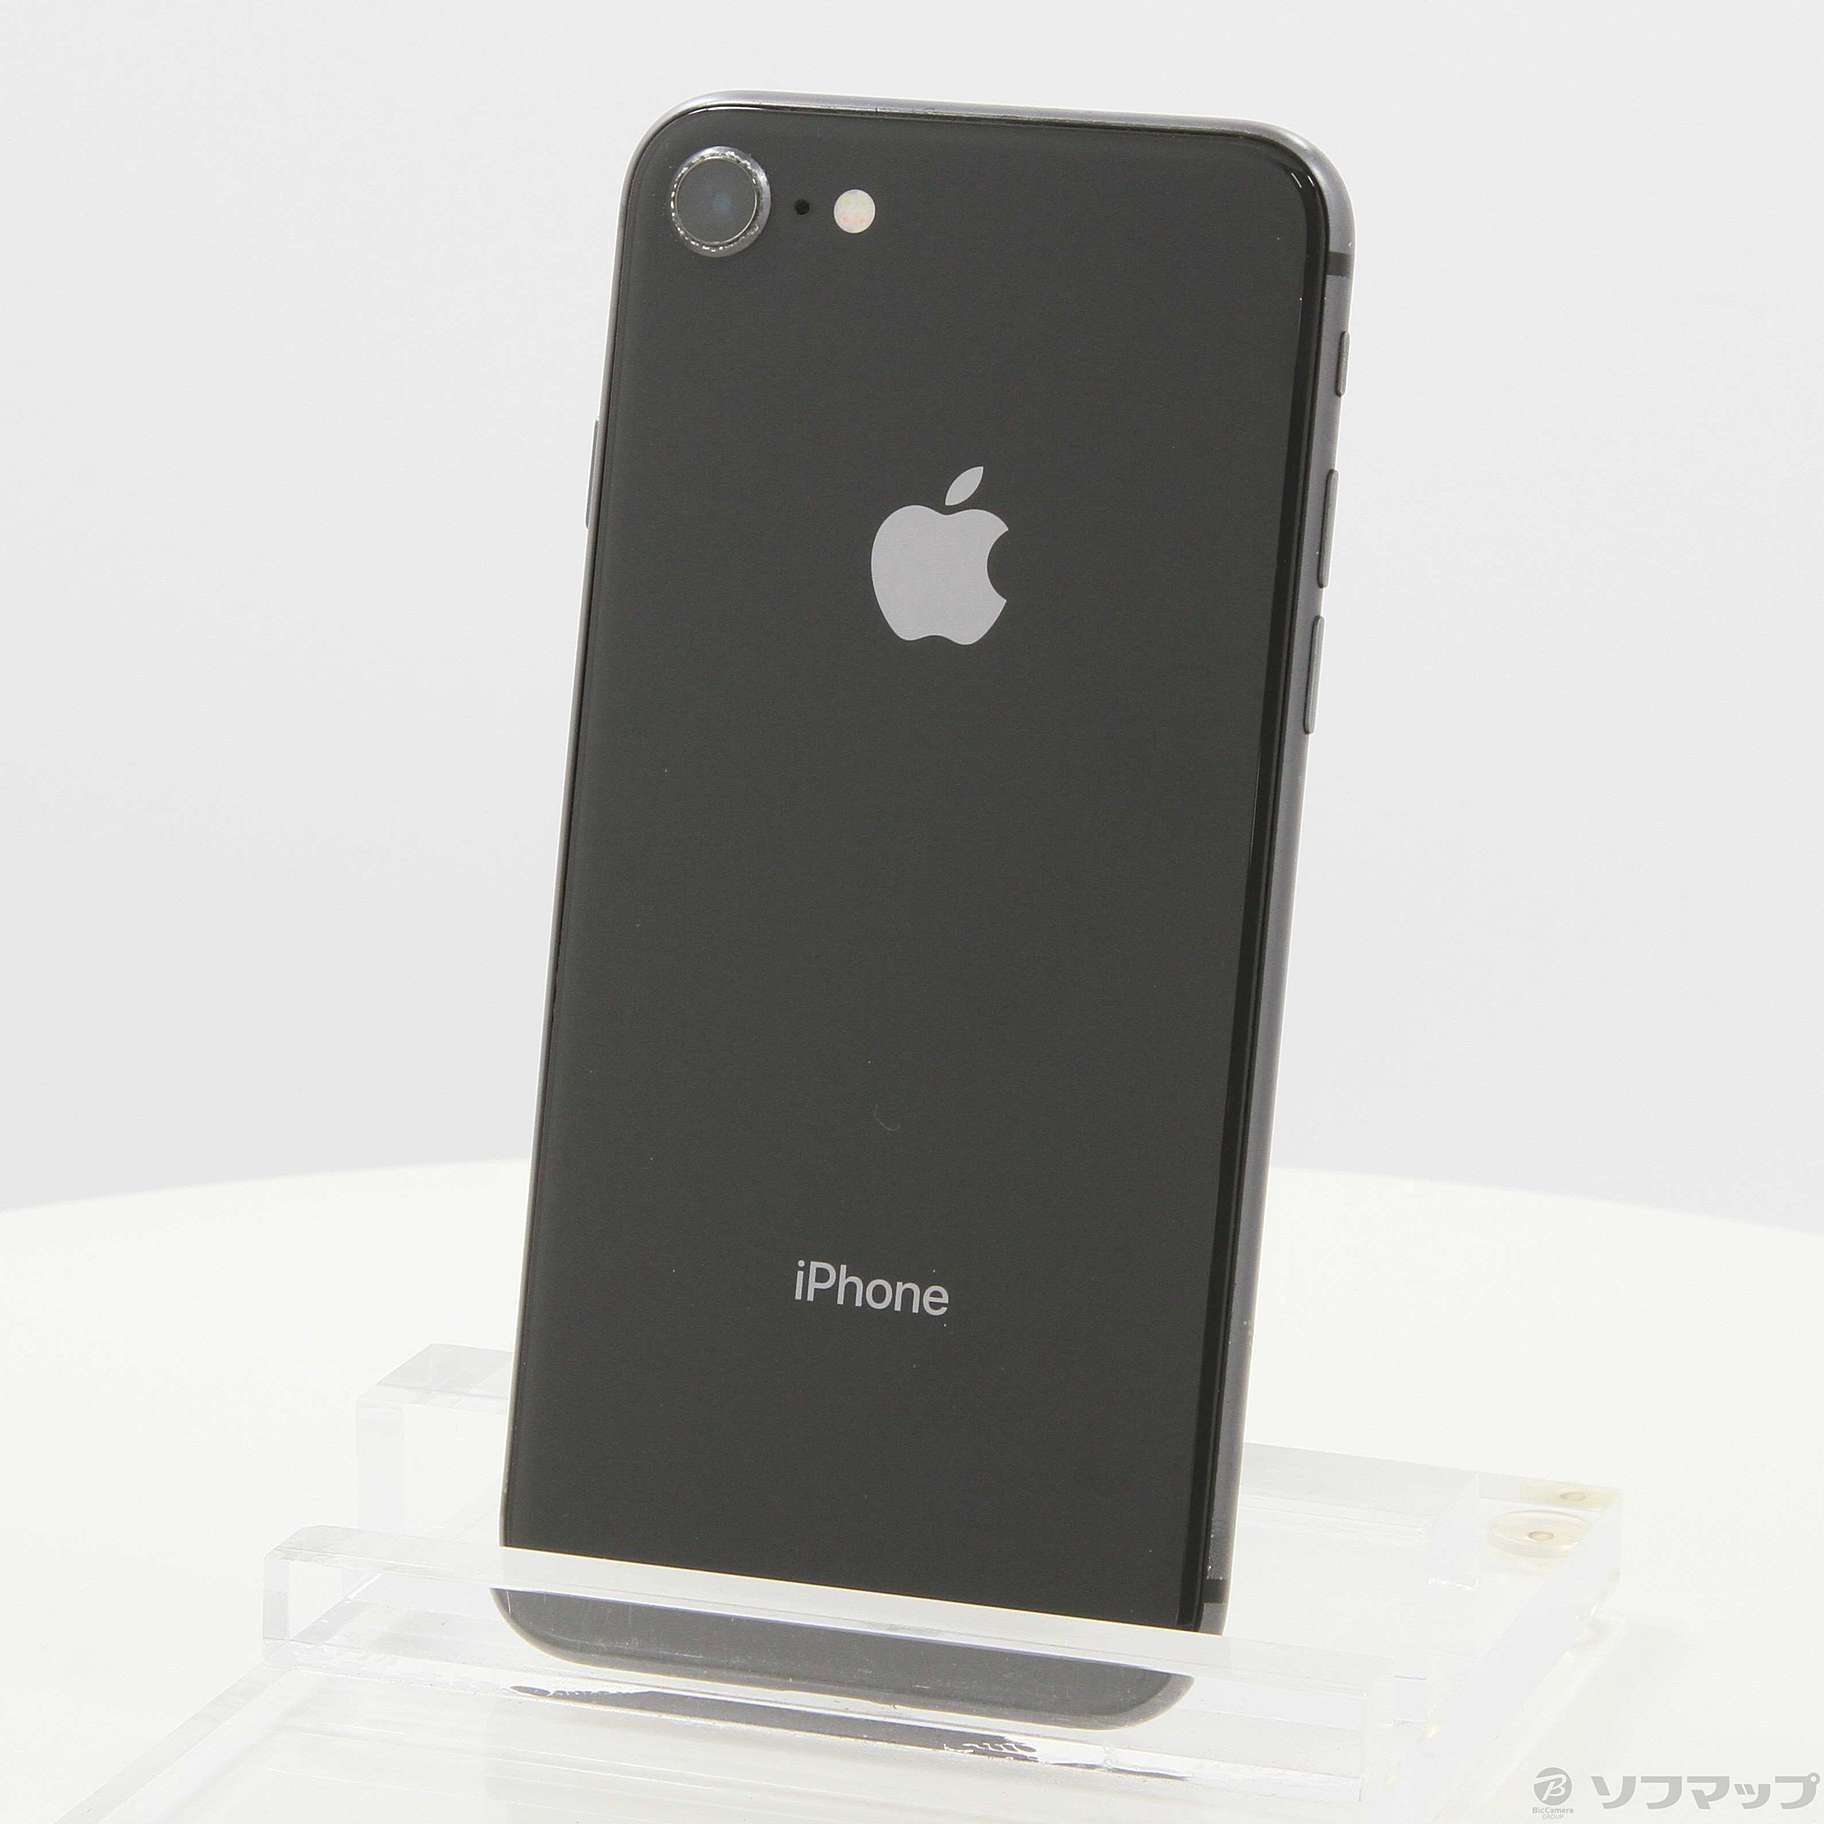 SIMフリー iPhone8 スペースグレイ64GB 本体[Cランク] iPhone 中古 送料無料 当社3ヶ月保証